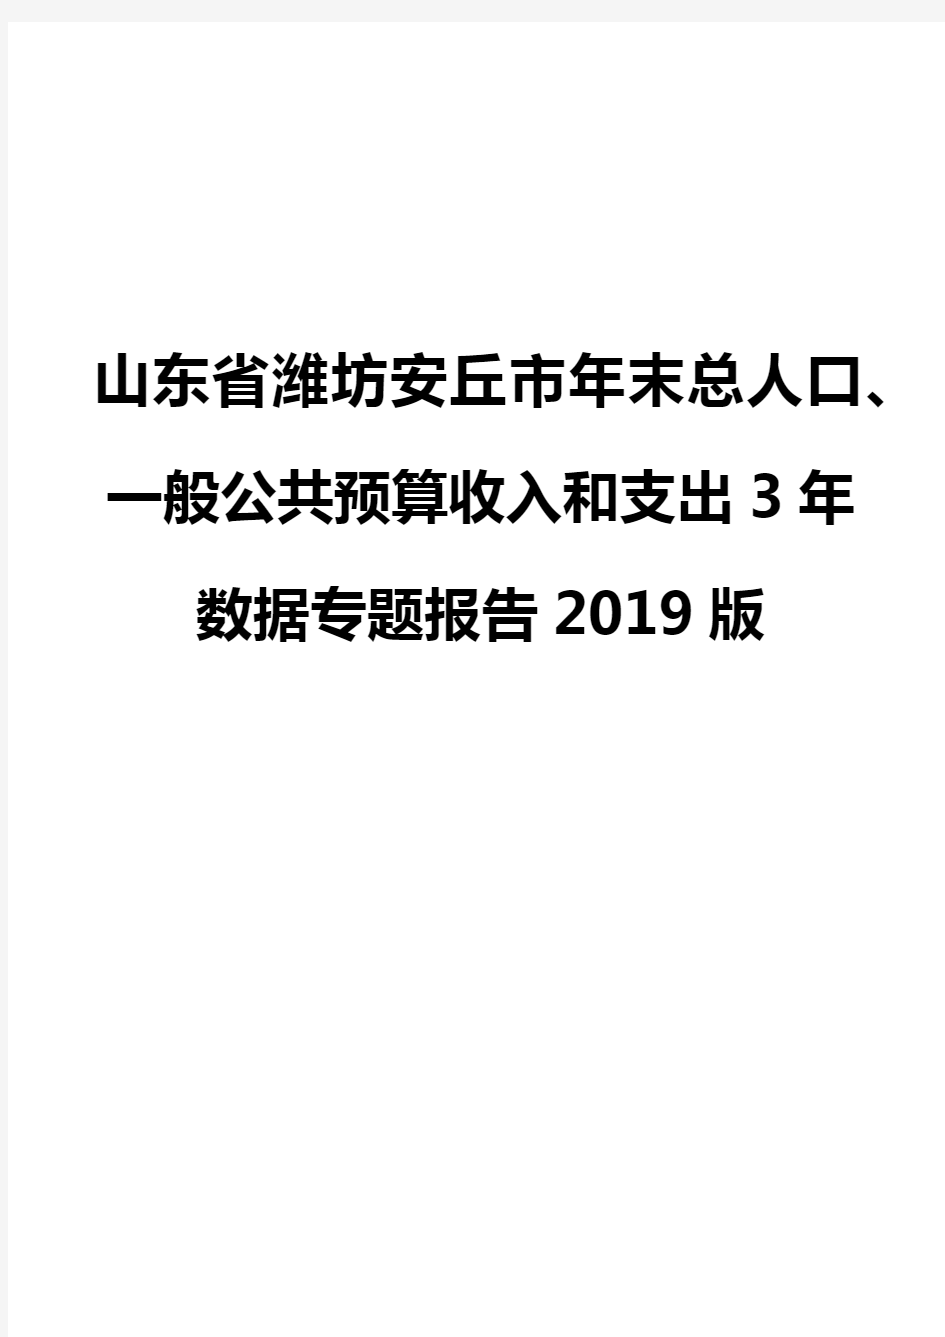 山东省潍坊安丘市年末总人口、一般公共预算收入和支出3年数据专题报告2019版